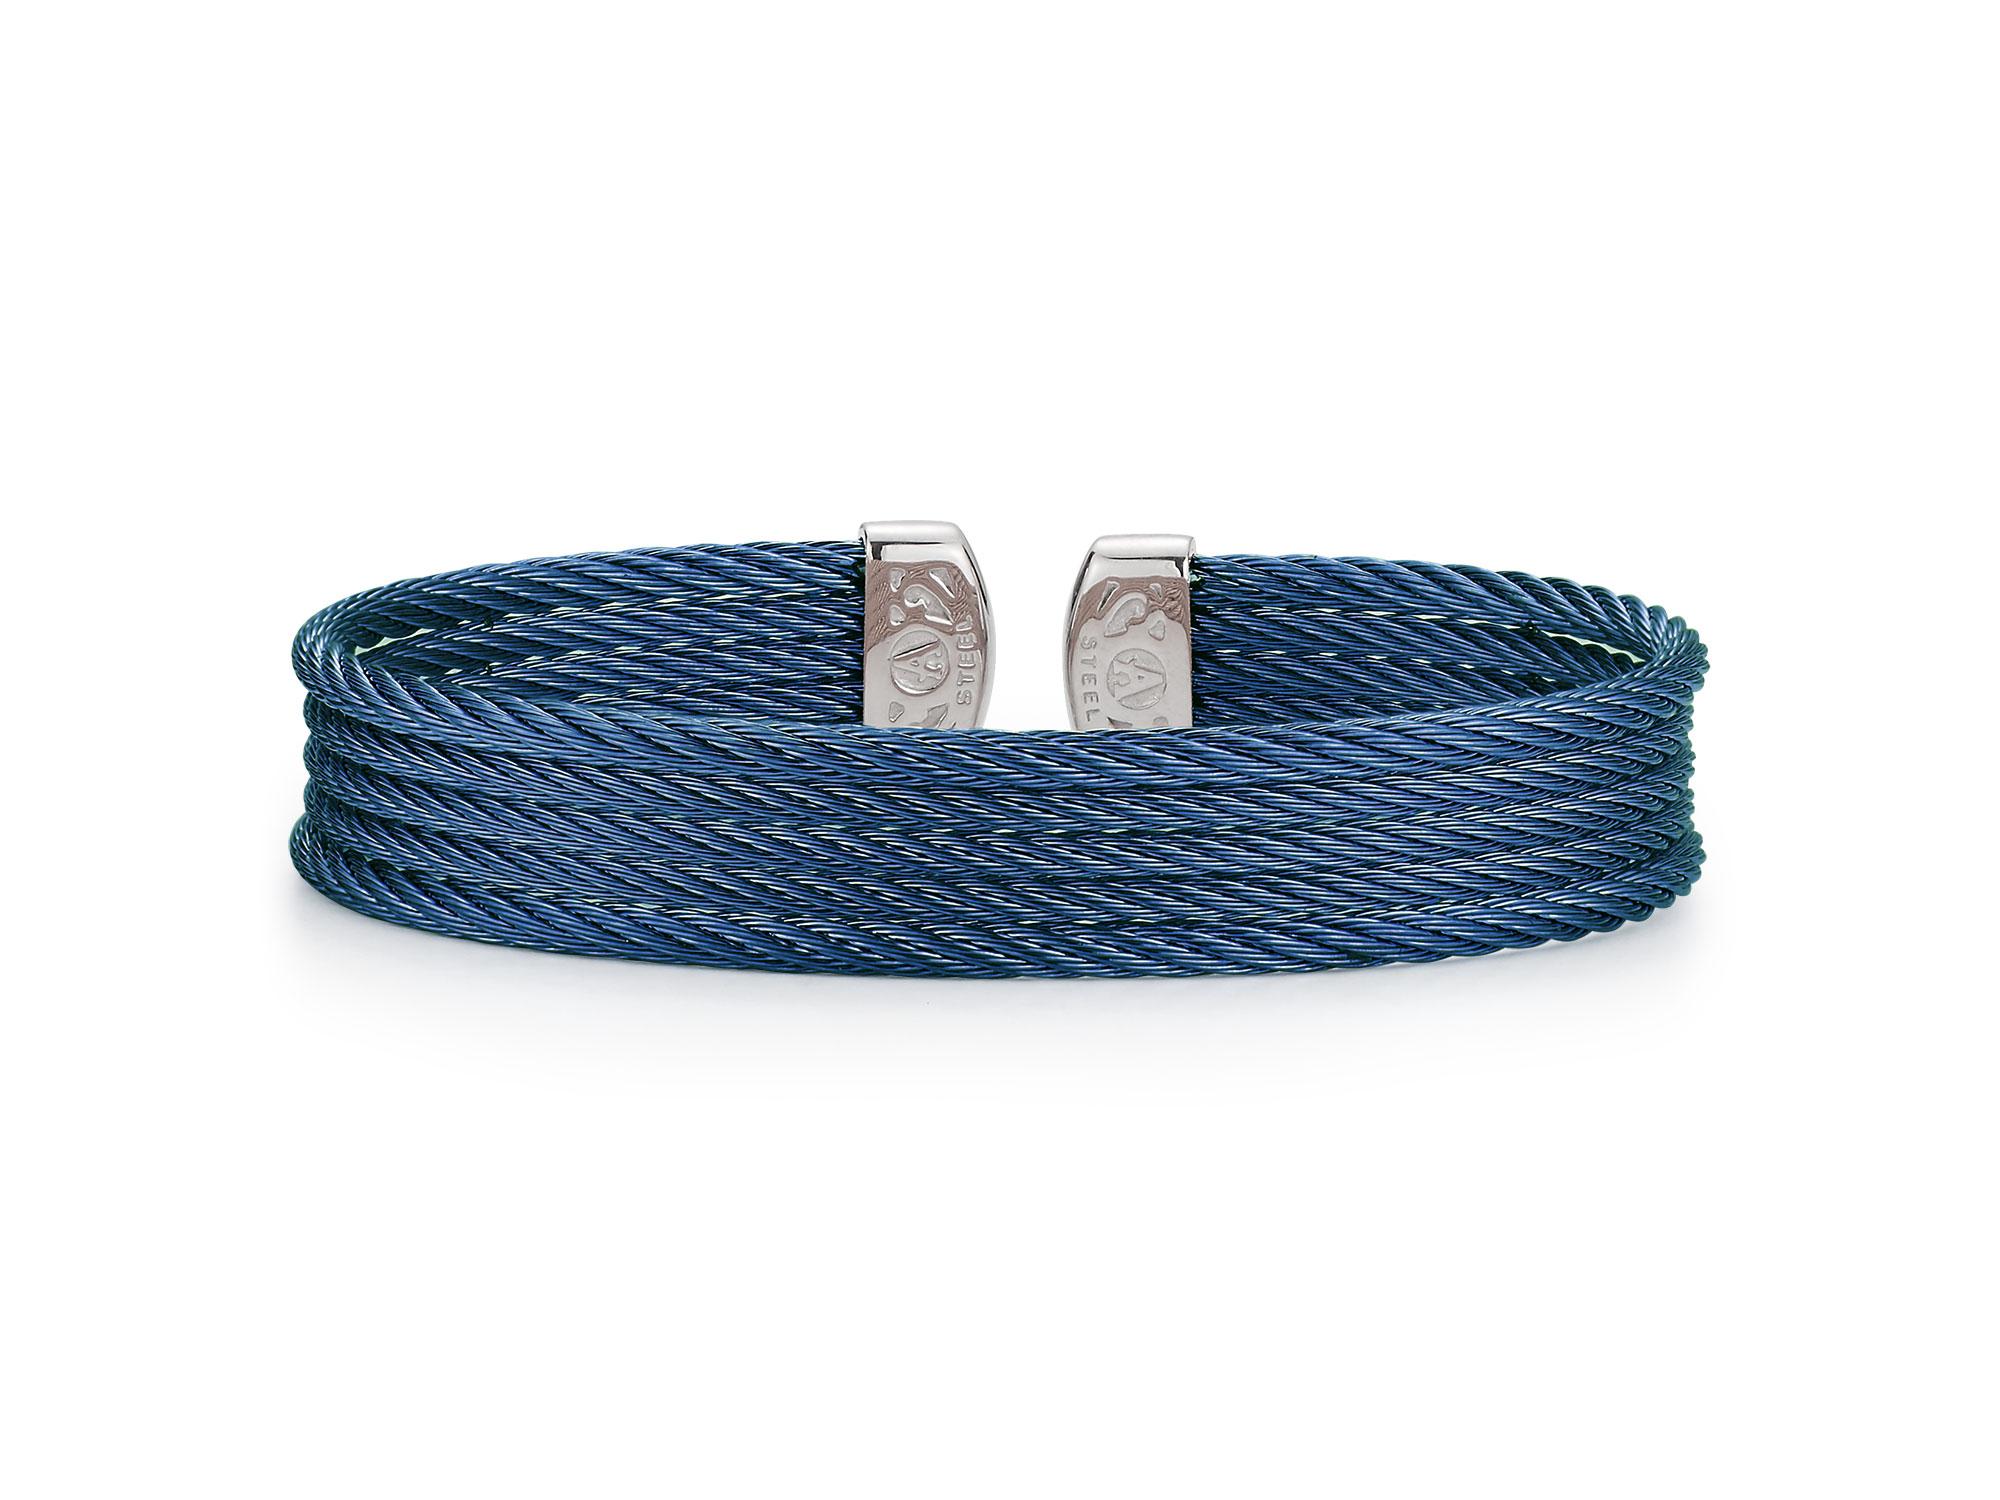 Alor Blueberry Cable Cuff Essentials 5-Row Mini Cuff 04-28-S605-00 In New Condition For Sale In Wilmington, DE